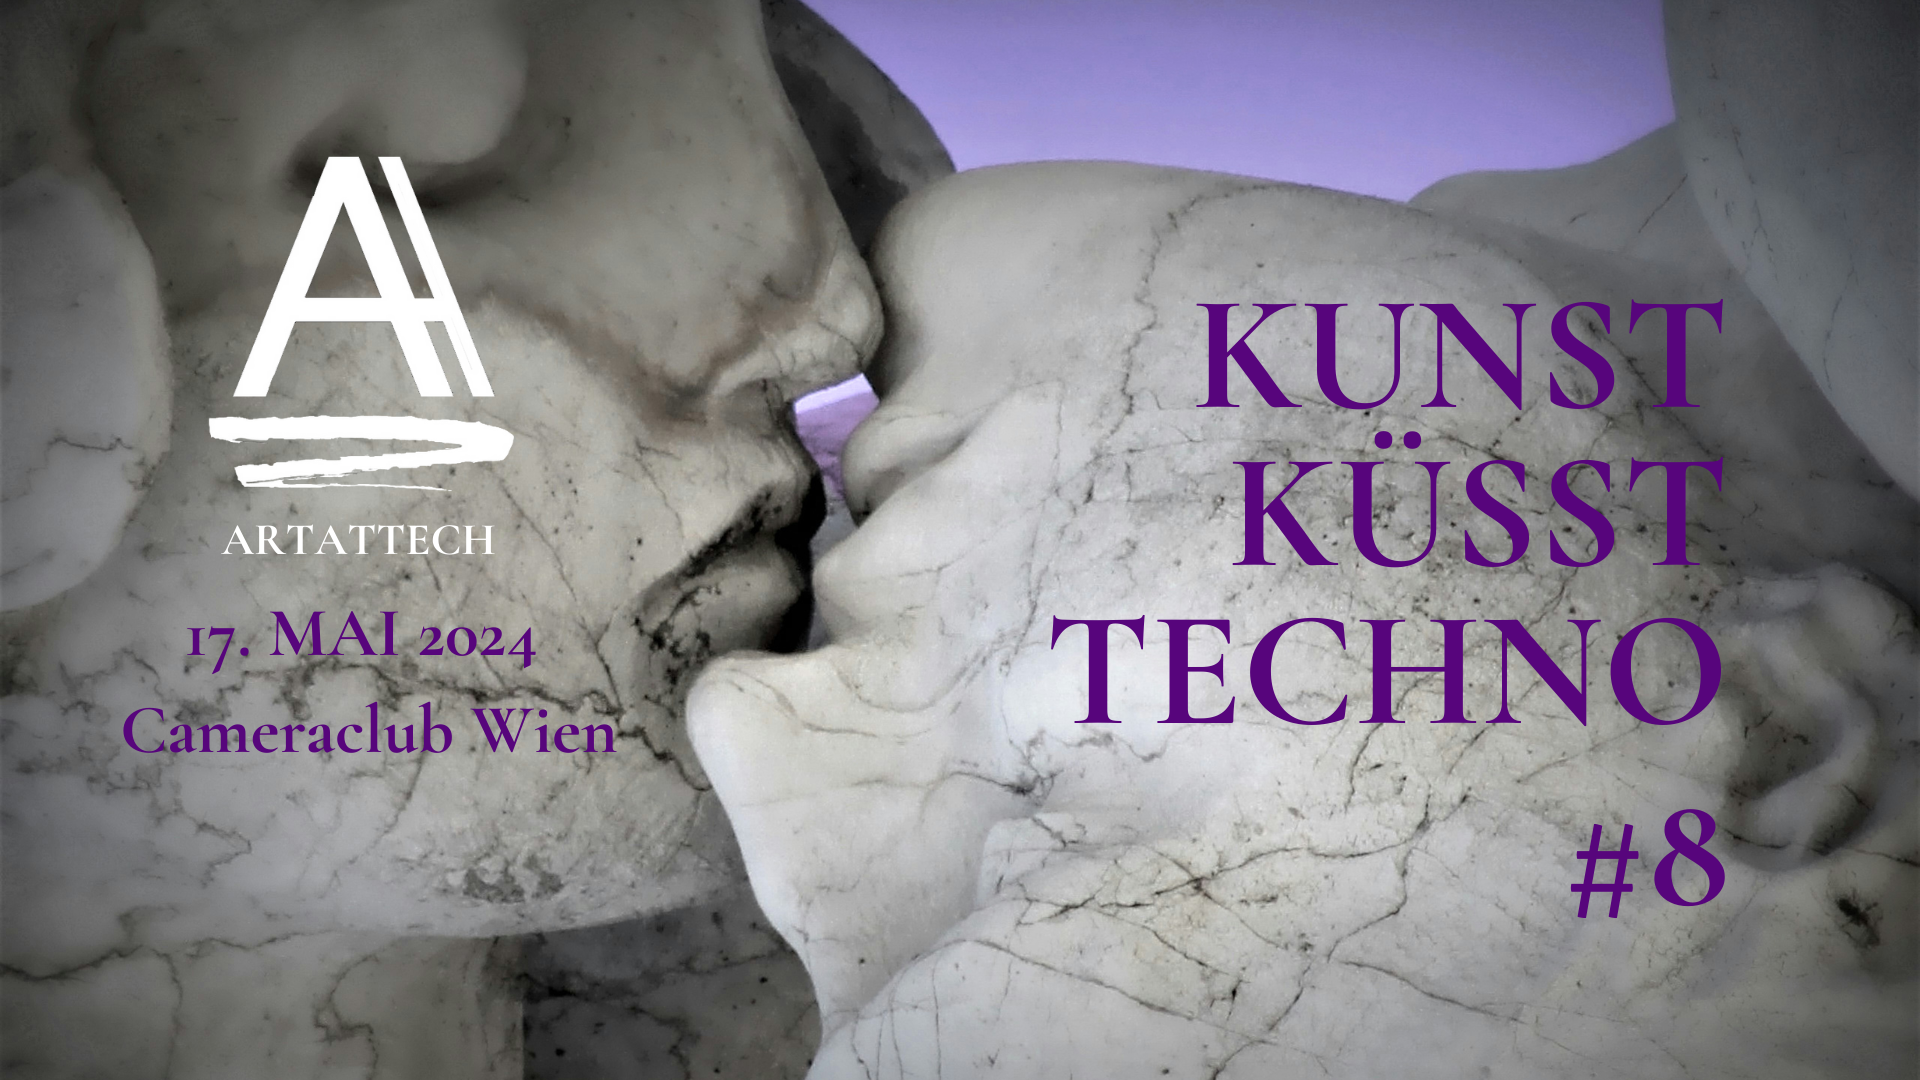 ARTATTECH #8 - Kunst küsst Techno - フライヤー表